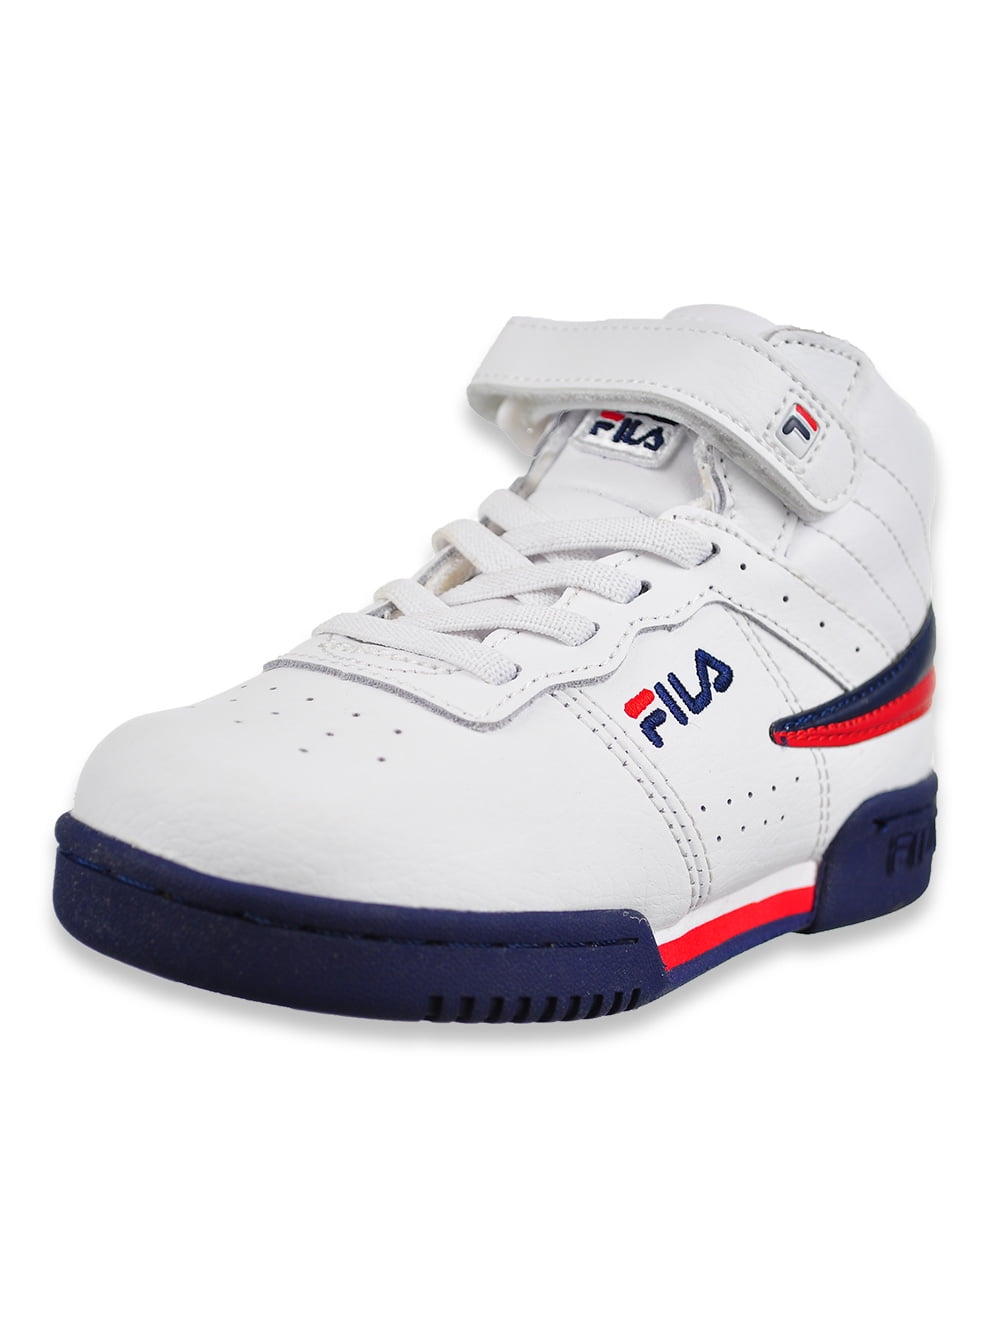 Fila Boys' F-13 Hi-Top Sneakers (Sizes 6 - 10) - Walmart.com